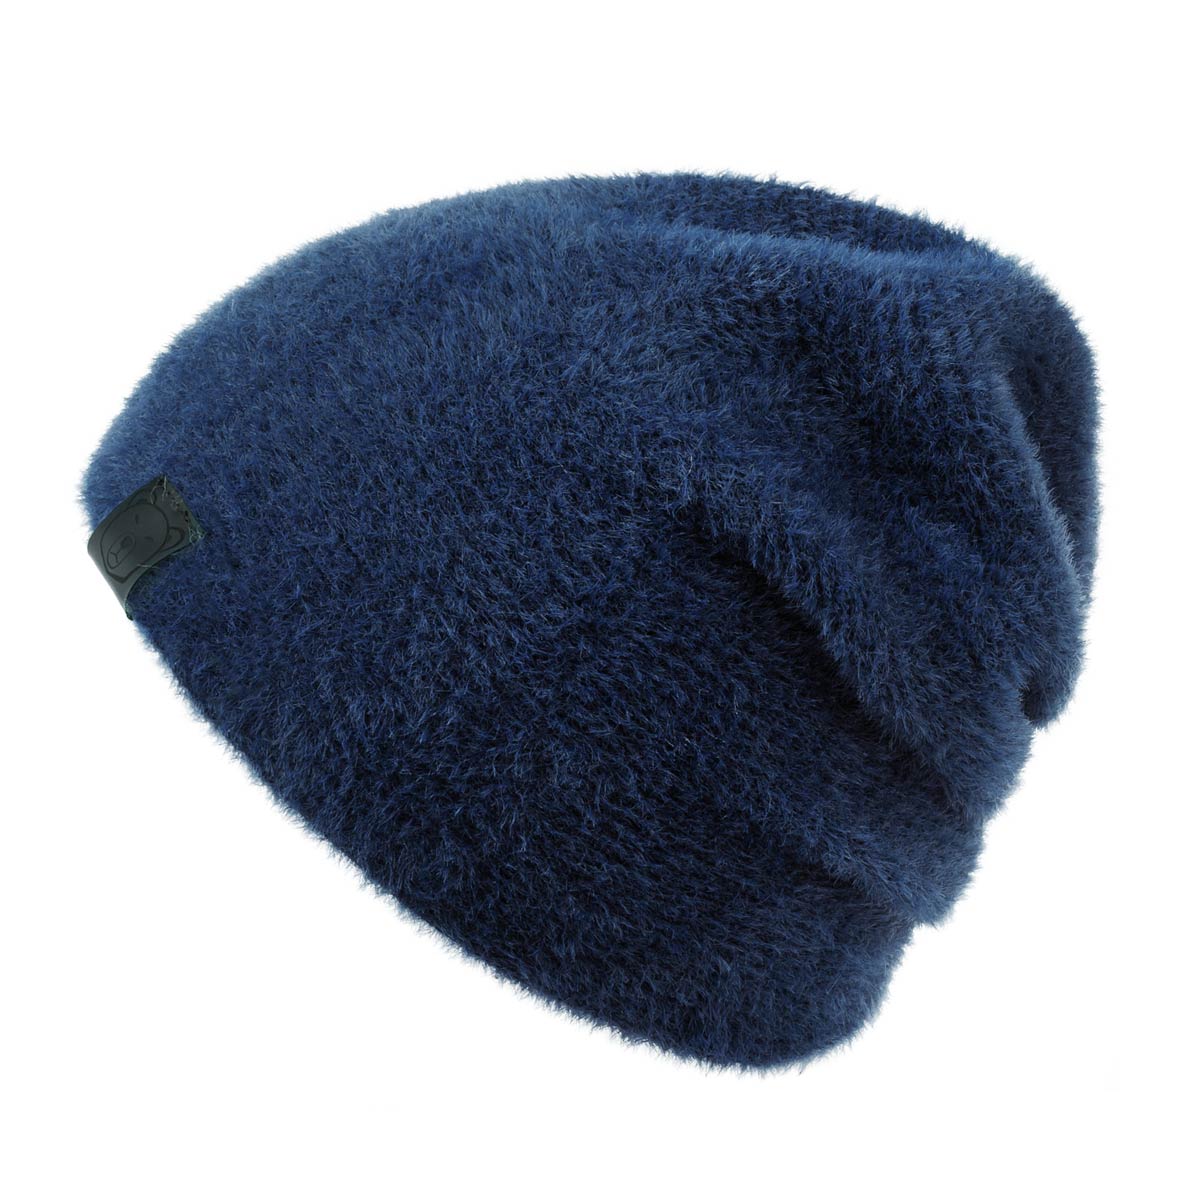 bonnet-hiver-bleu-marine-chaud-et-confortable--CP-01673